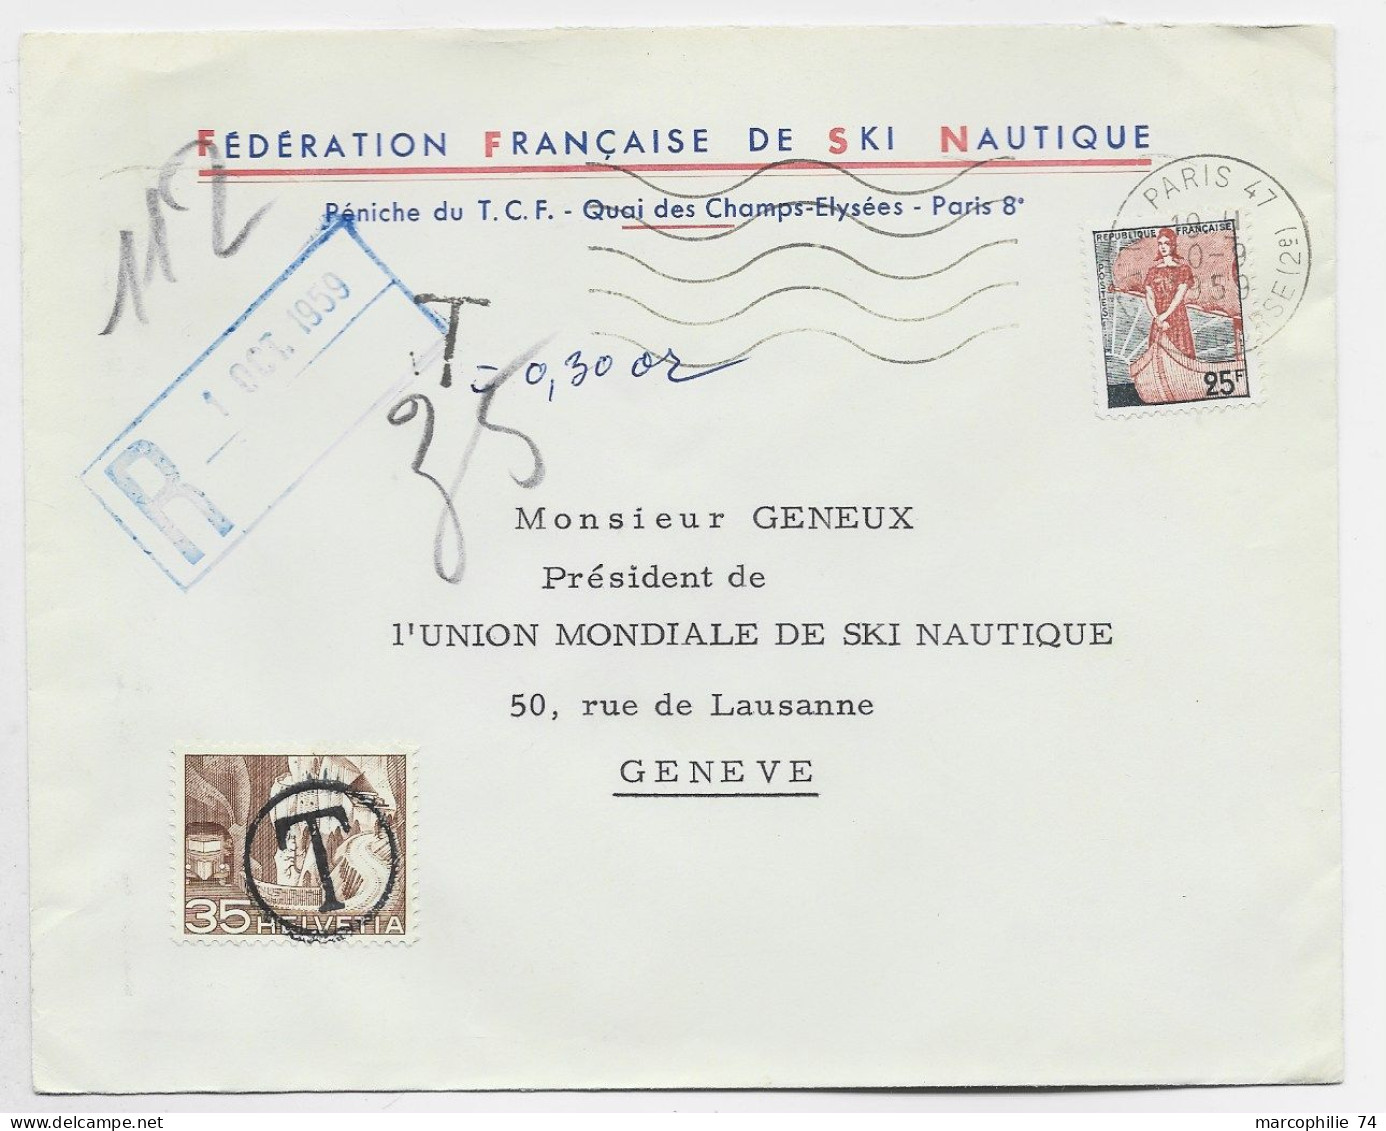 FRANCE LETTRE COVER ENTETE FEDERATION FRANCAISE DE SKI NAUTIQUE MARIANNE A LE NEF 25FR PARIS 1959 POUR SUISSE TAXE 35C - Wasserski